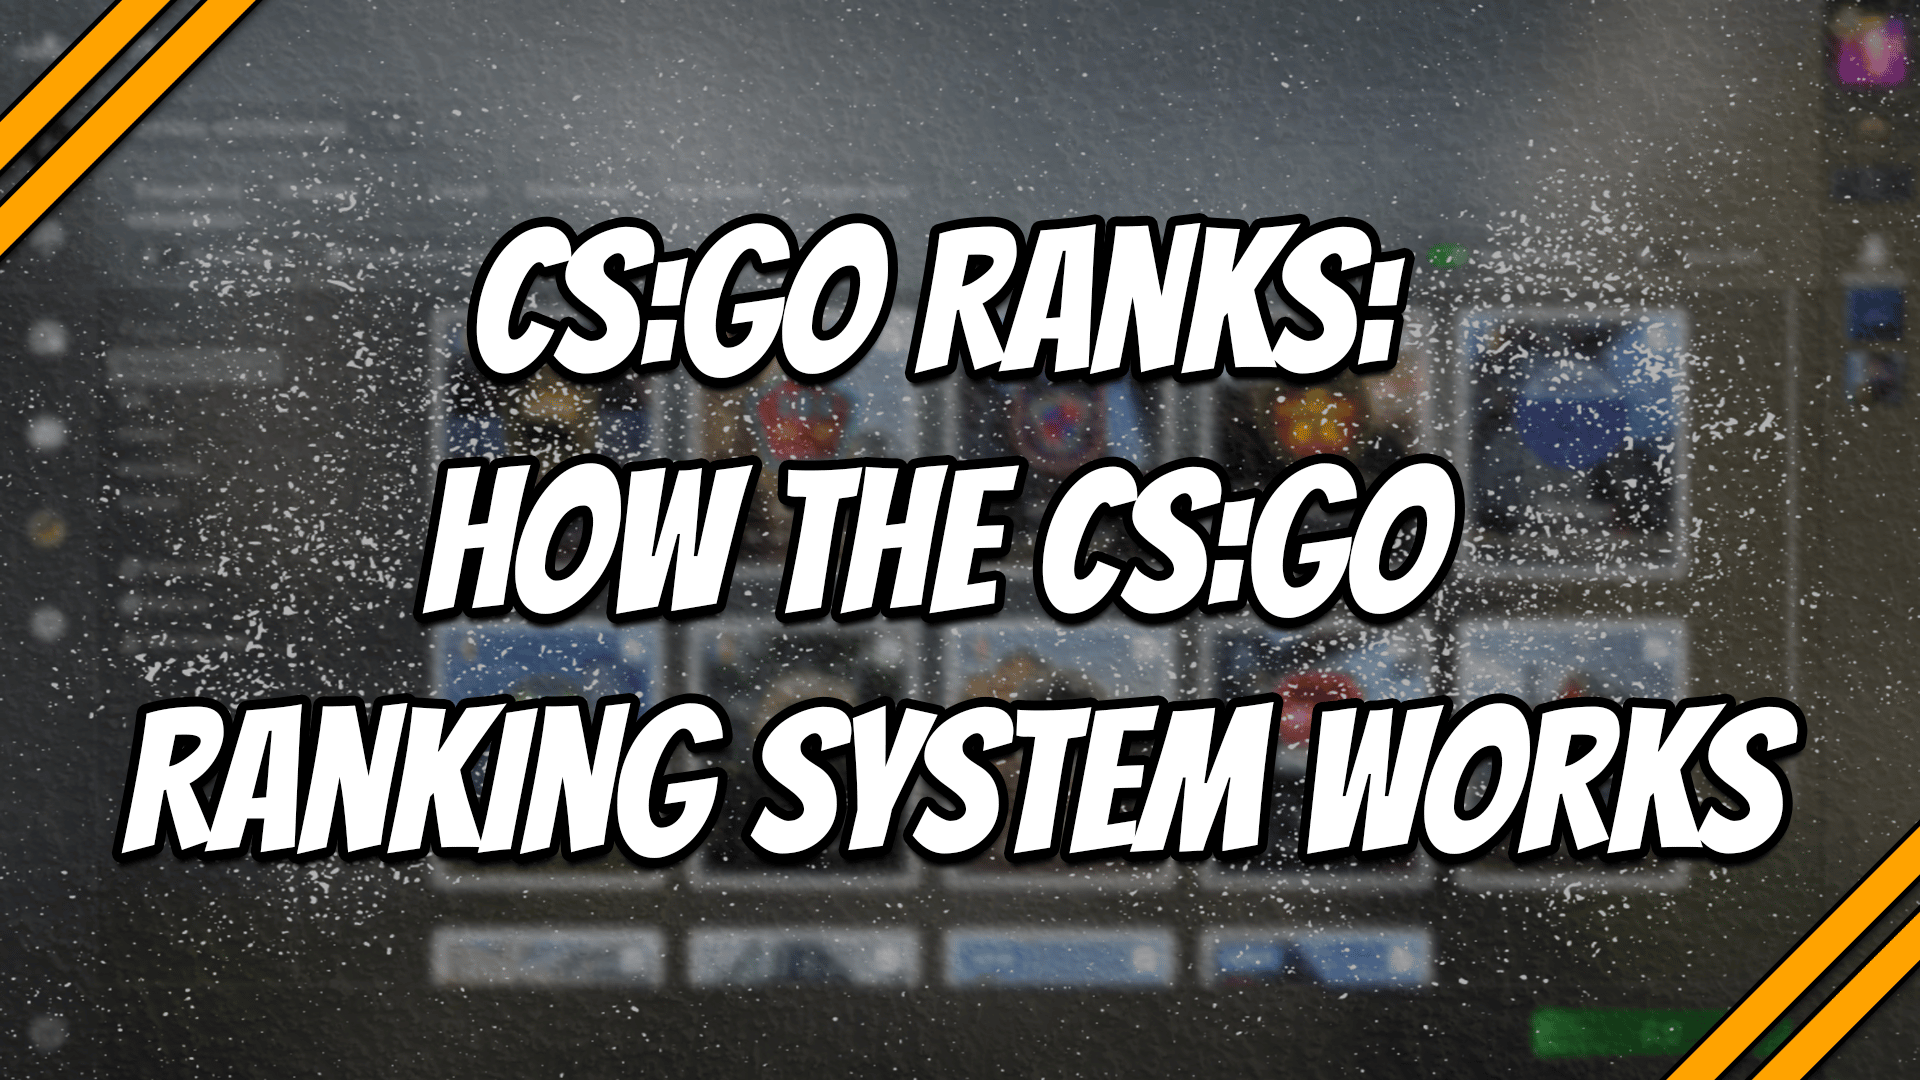 CS:GO Ranks: How The CS:GO Ranking System Works